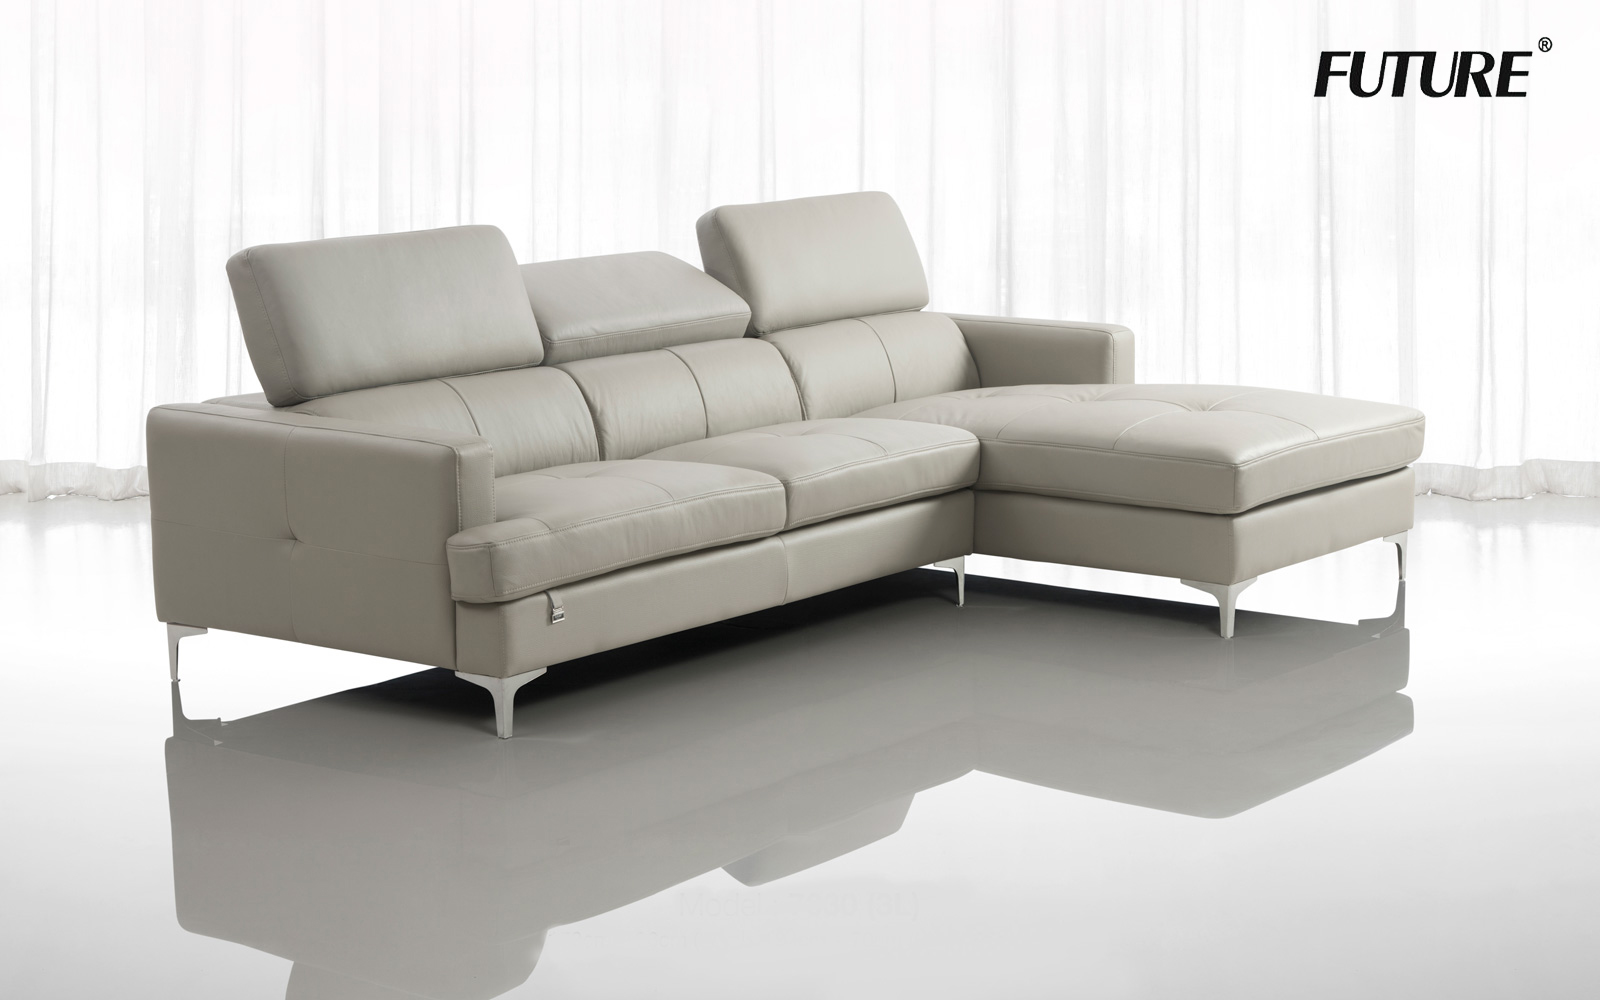 Mãn nhãn với 8 mẫu ghế sofa nhập khẩu Malaysia hiện đại tinh tế - Ảnh 3